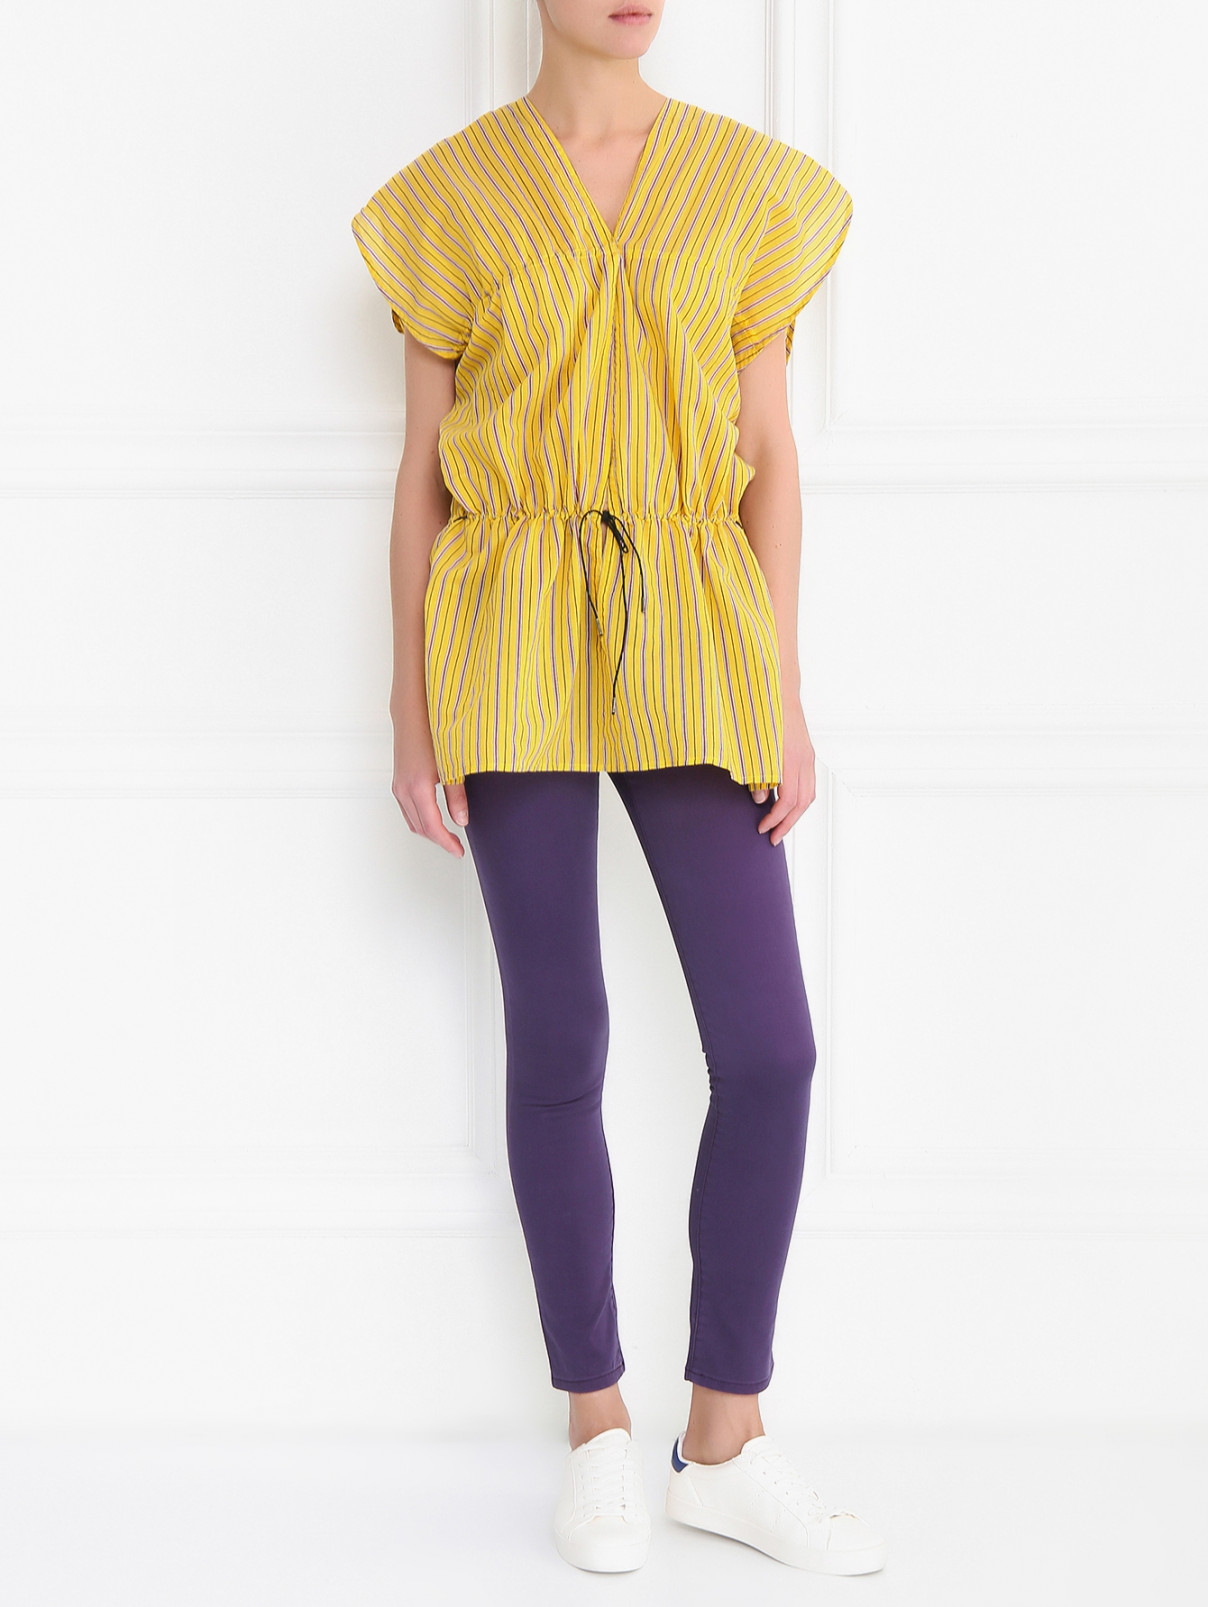 Брюки узкого кроя из хлопка Armani Jeans  –  Модель Общий вид  – Цвет:  Фиолетовый